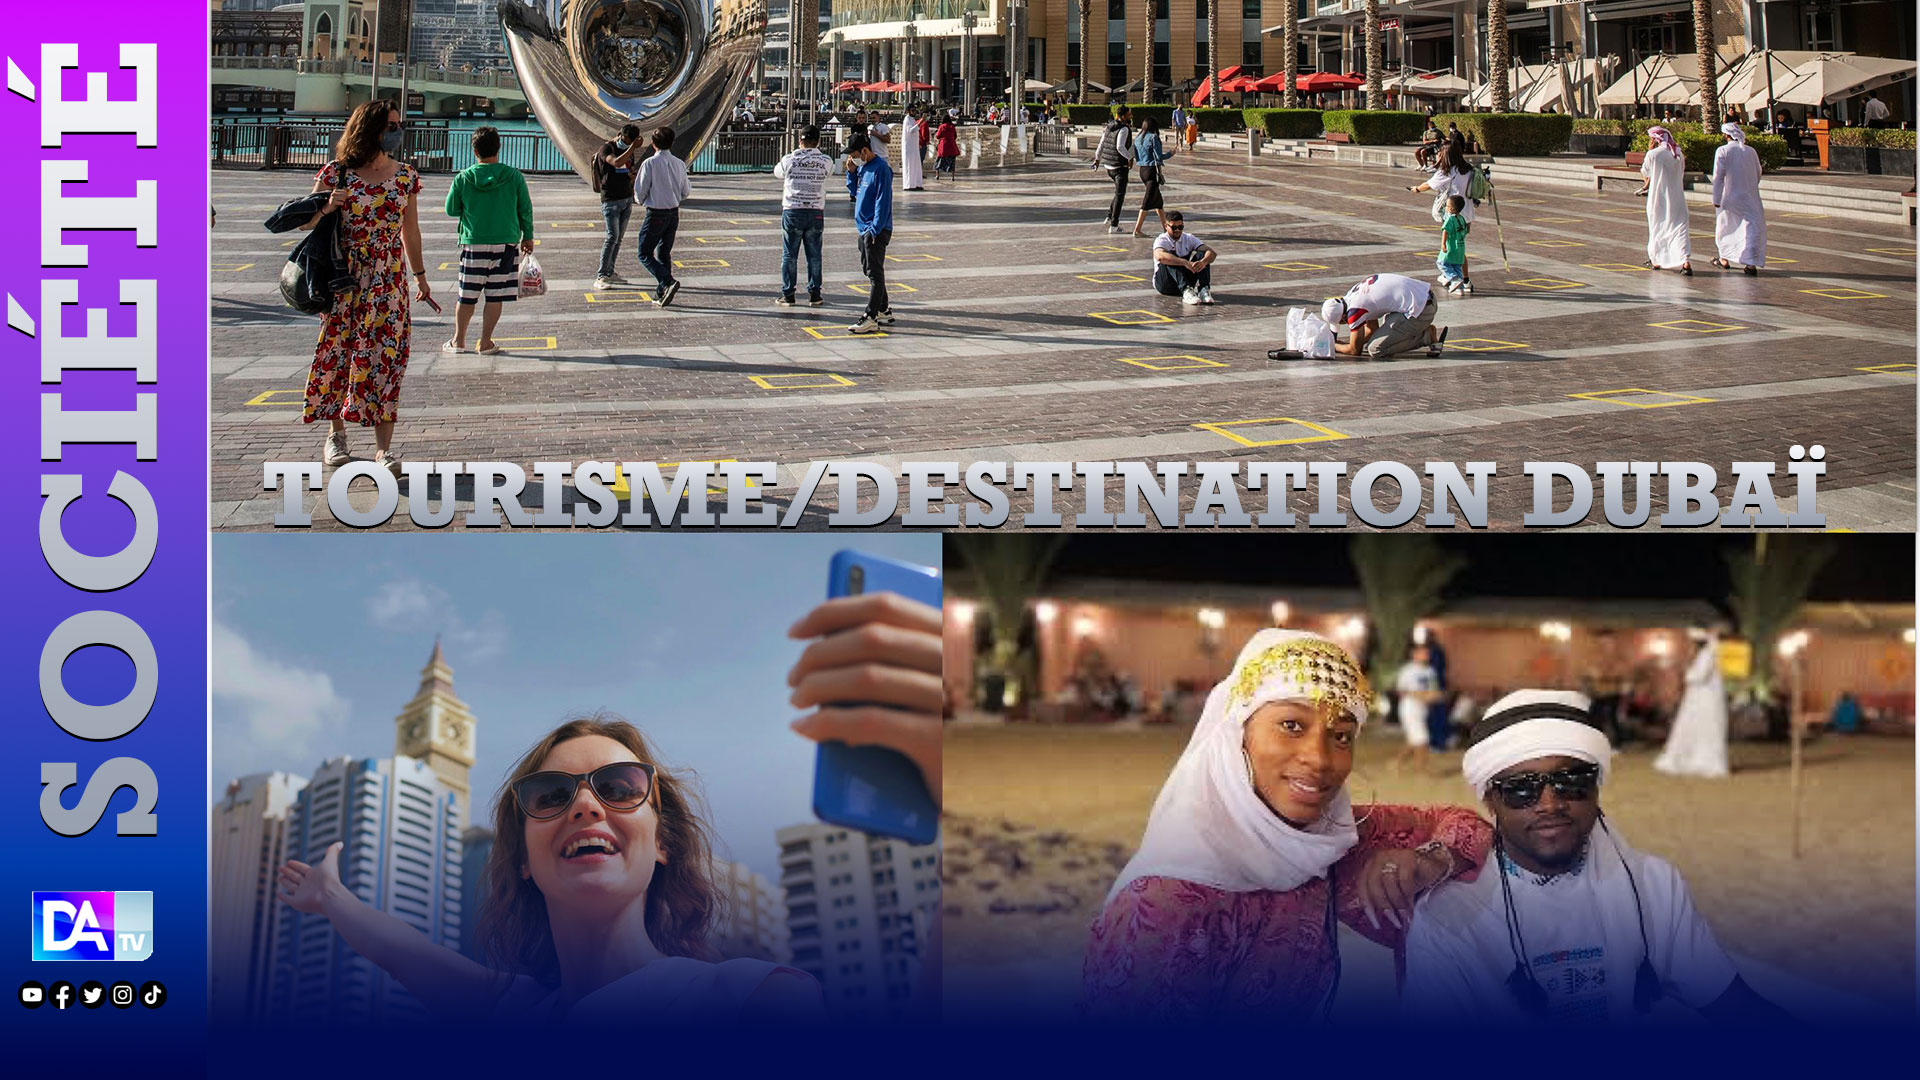 Tourisme/Destination Dubaï : vie de luxe, découverte, guerre des clics… Quand les influenceurs apportent leur note à la partition